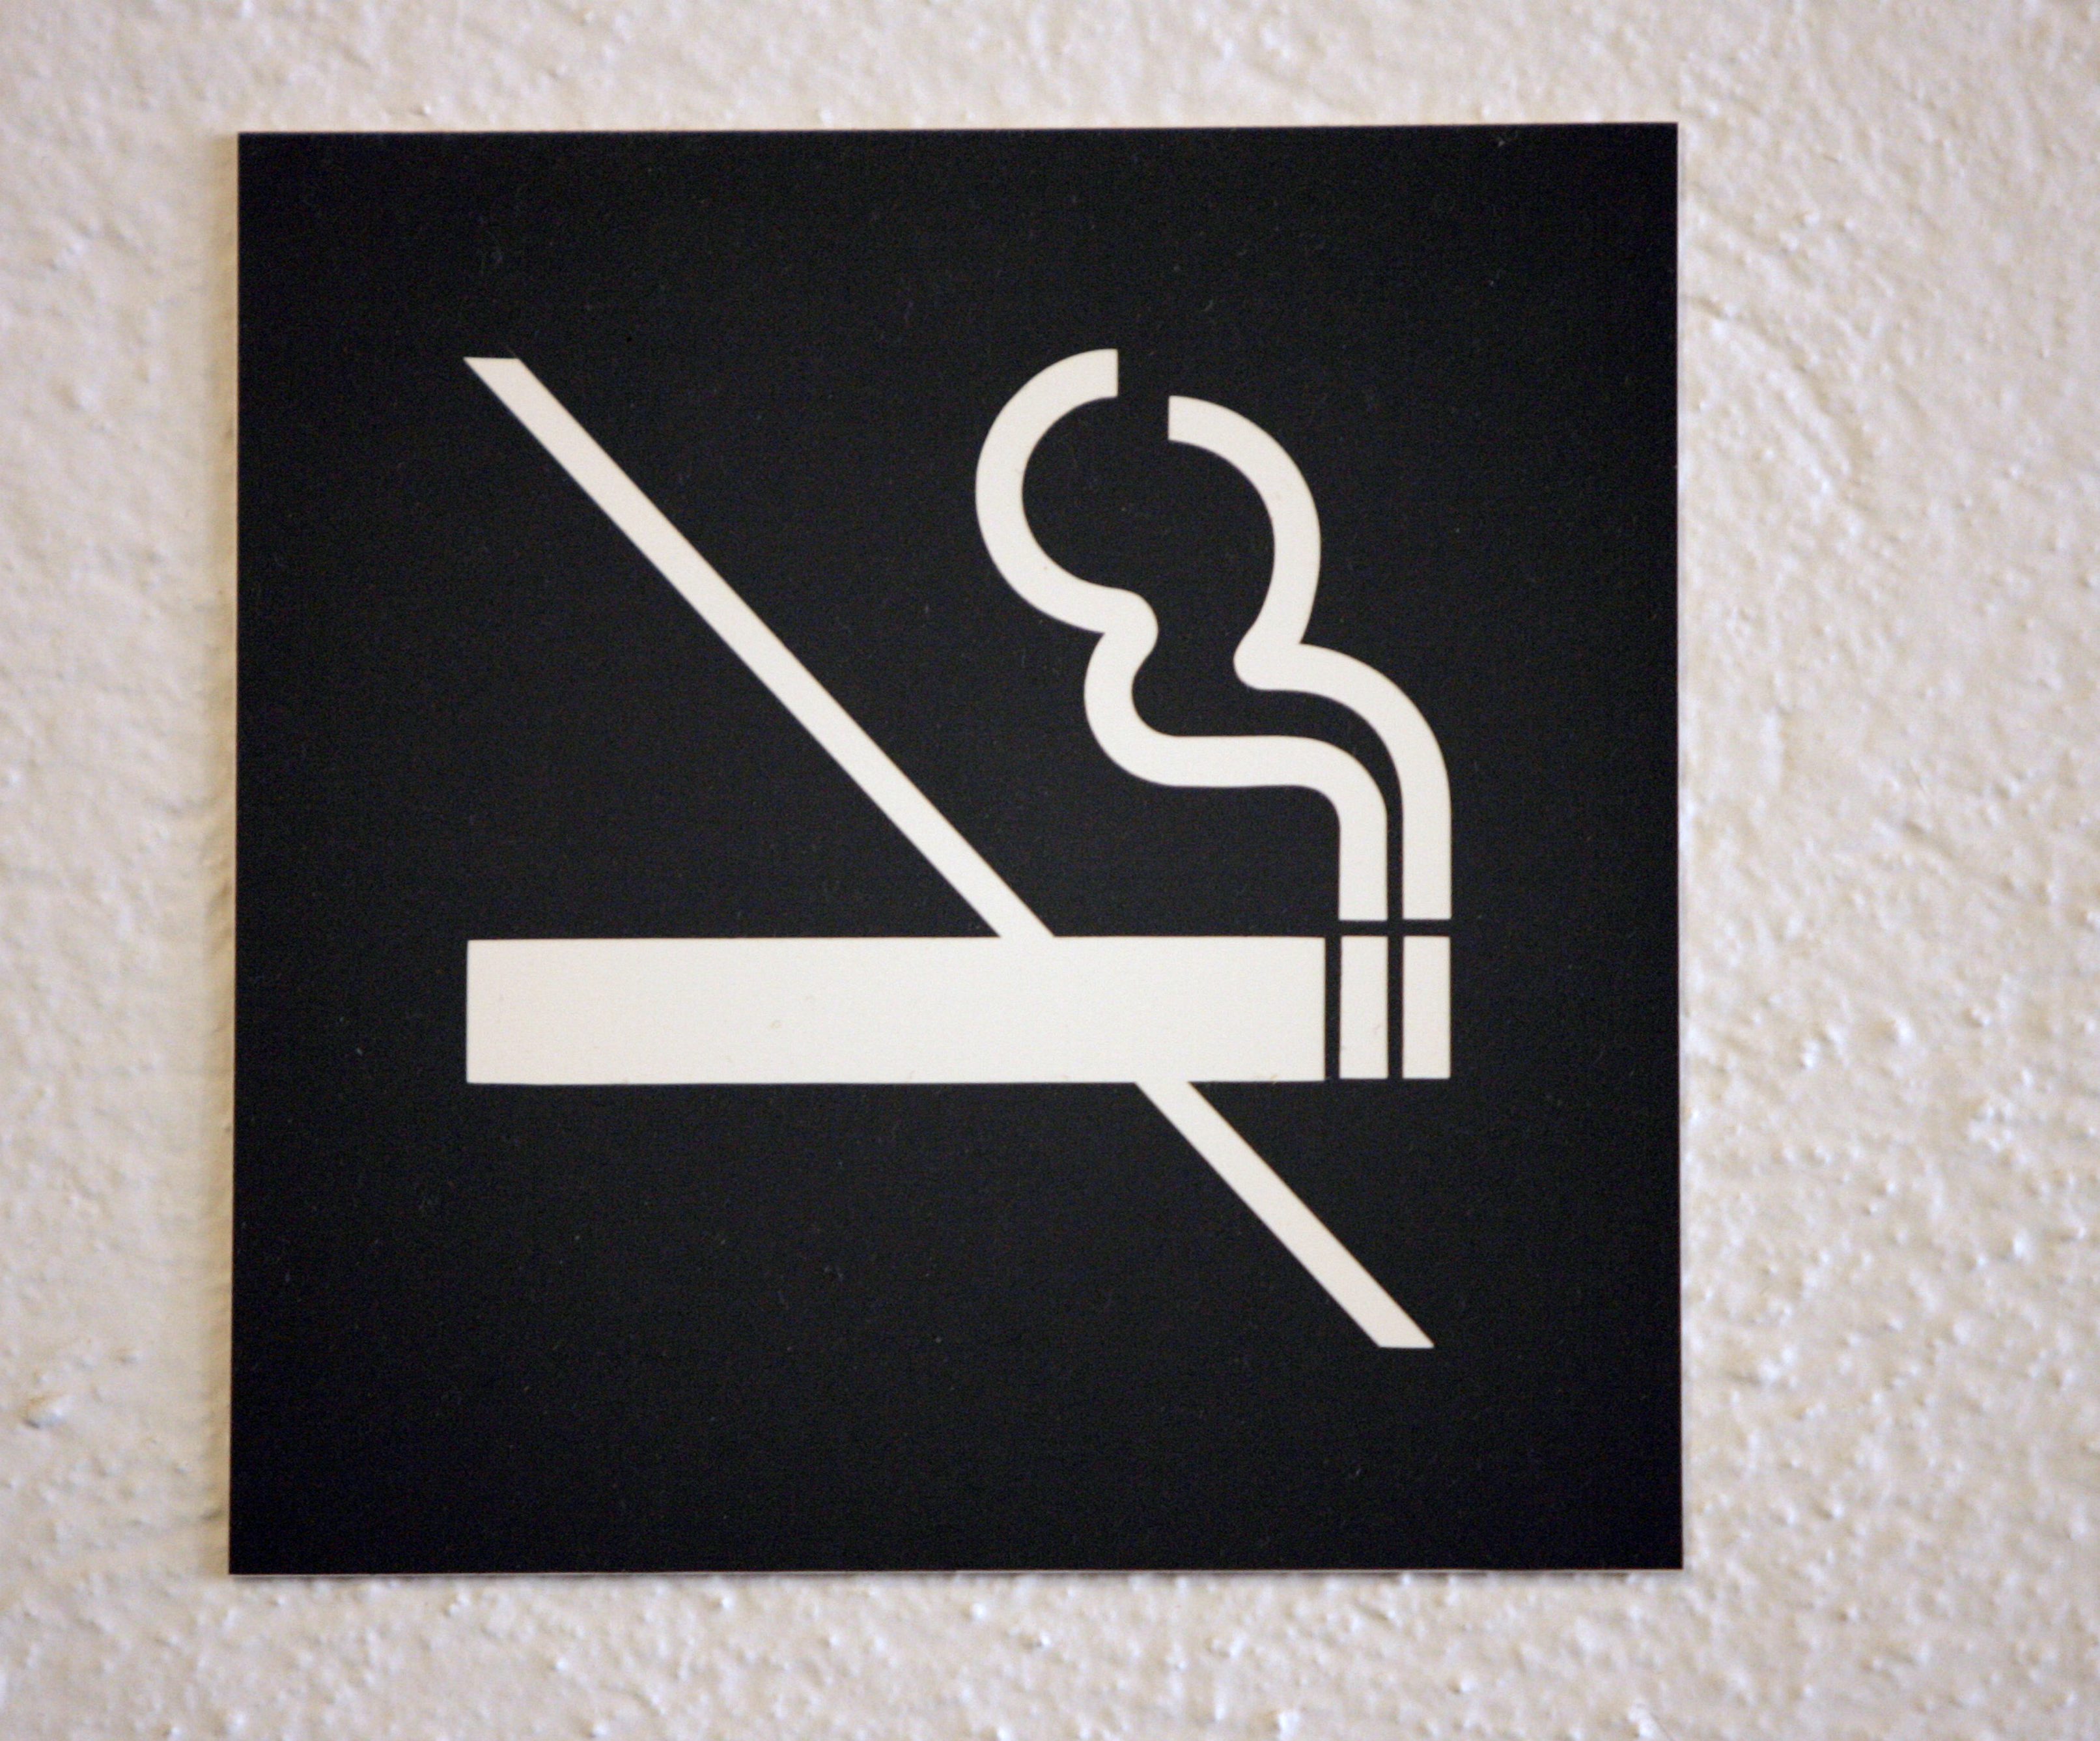 Rökförbud införs på Camp Nous branta läktare.